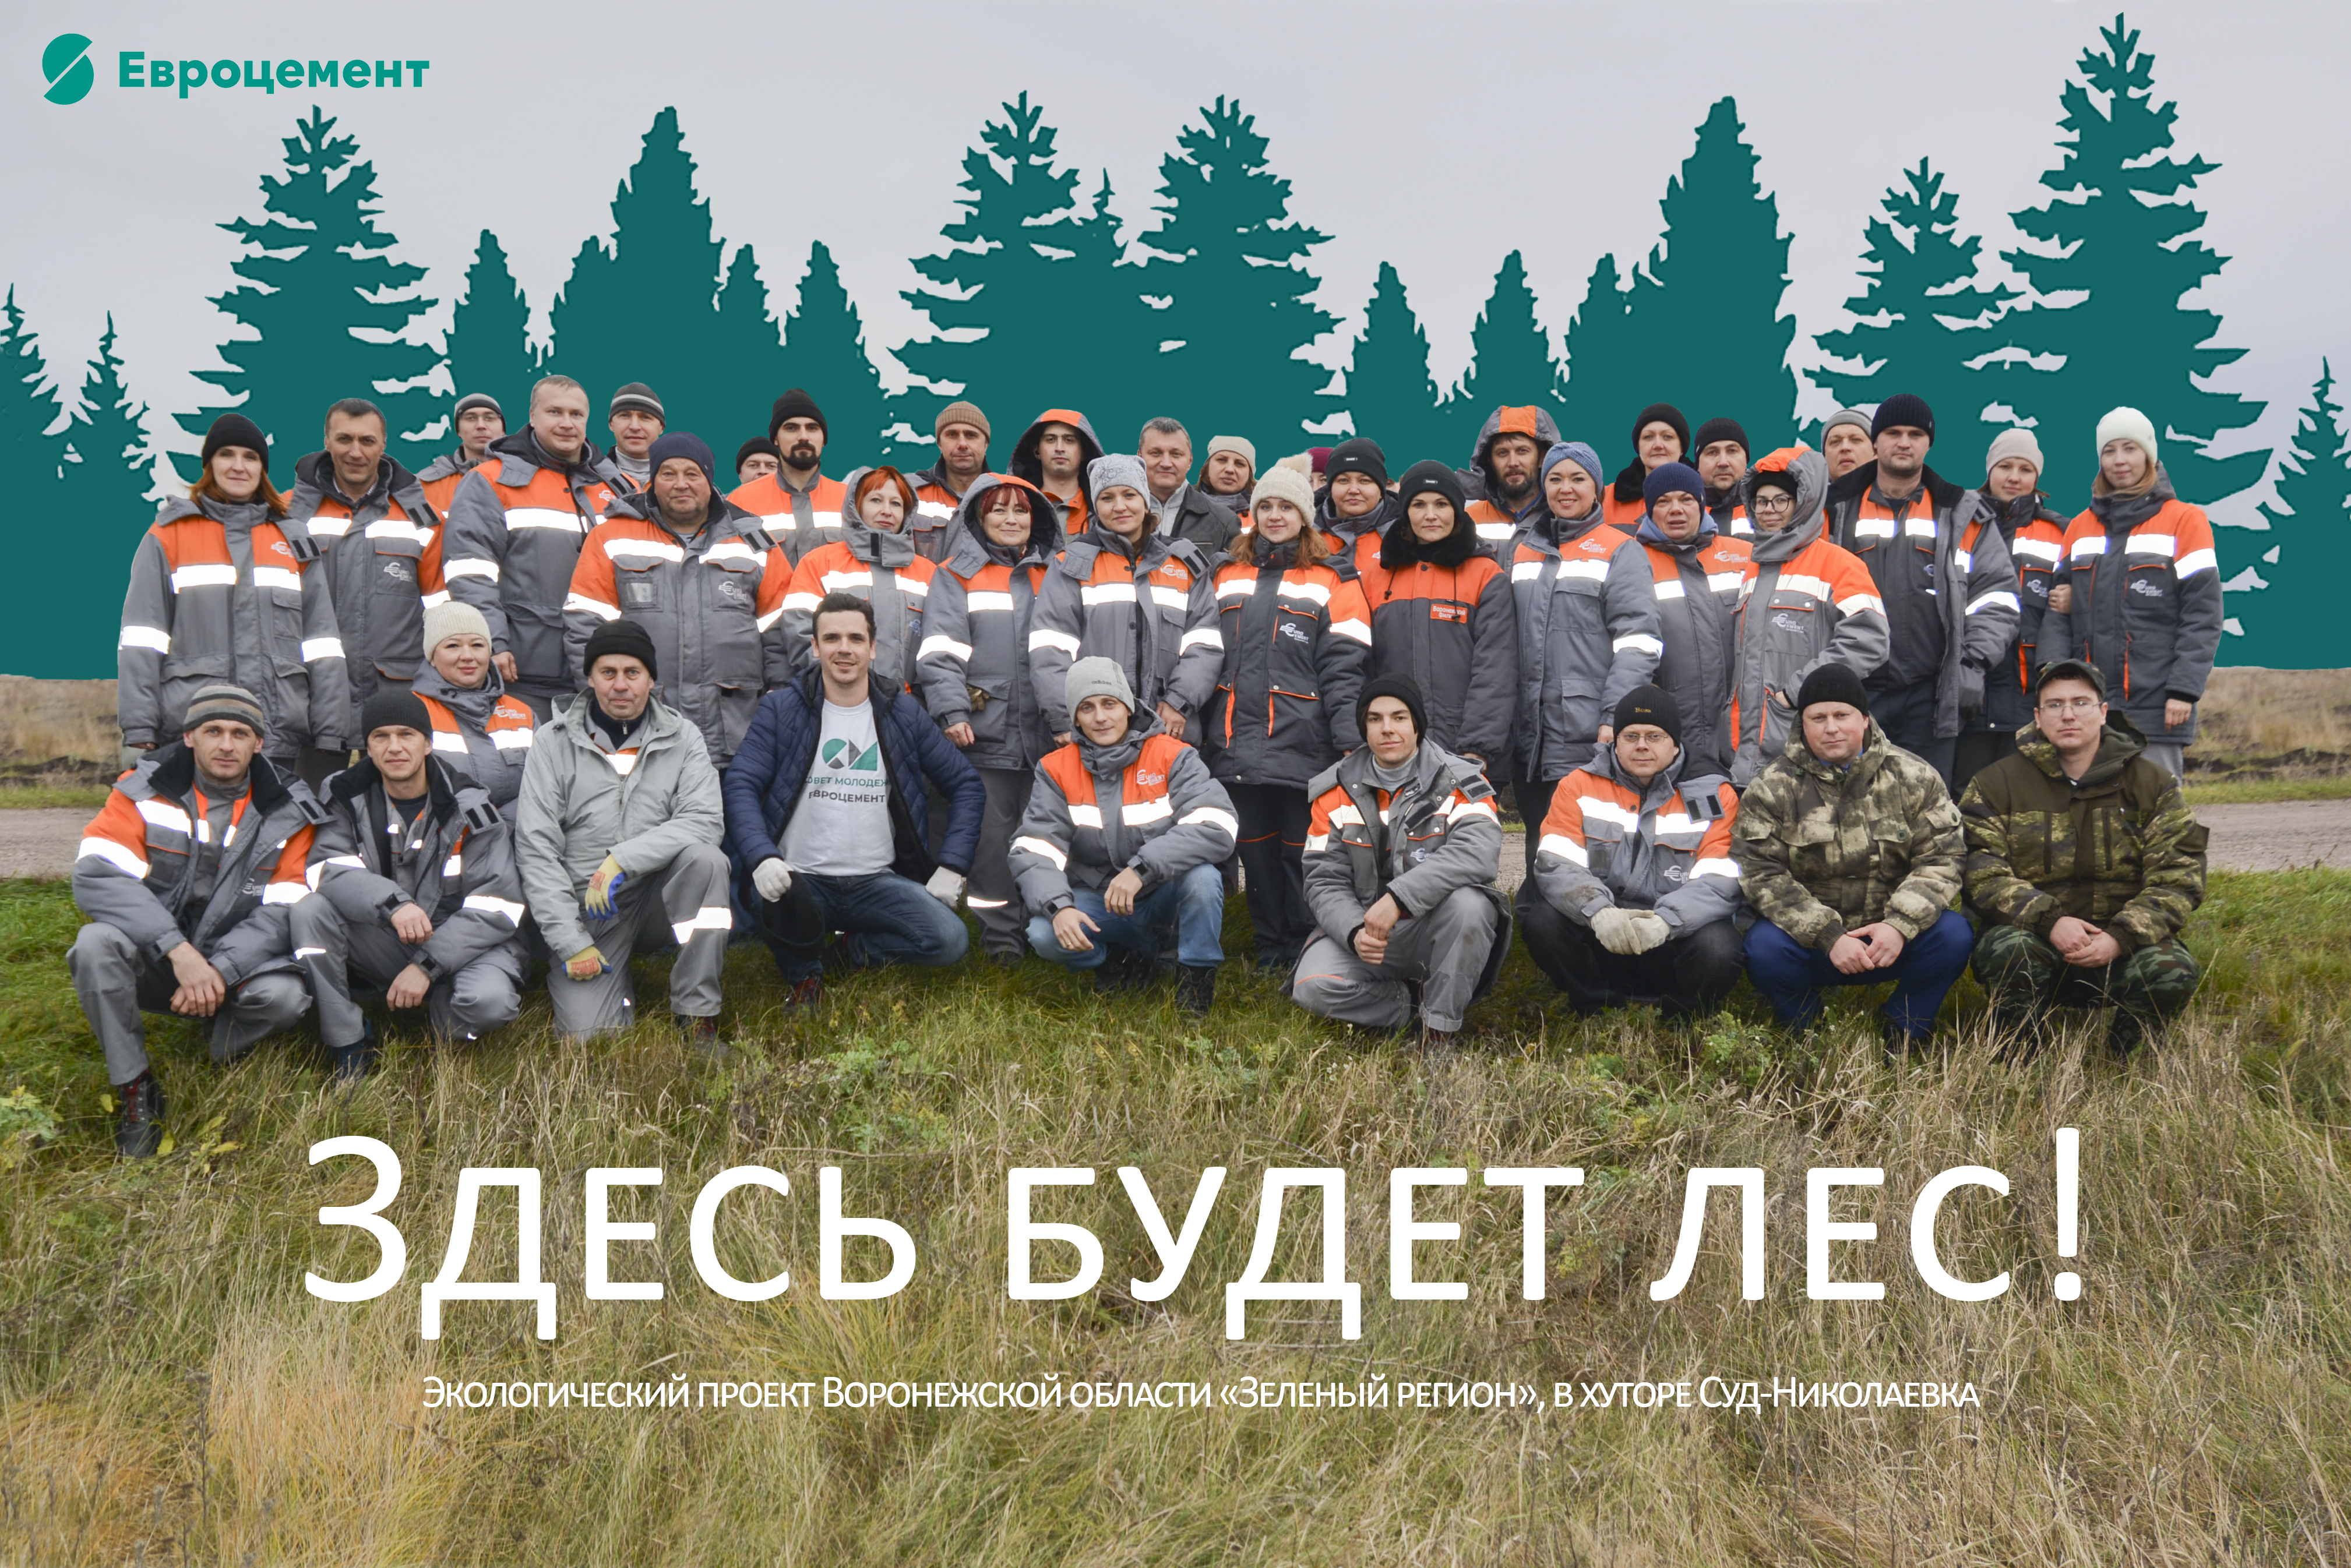  Сотрудники Воронежского филиала Евроцемента помогли высадить 3400 деревьев в рамках проекта Зелёный регион